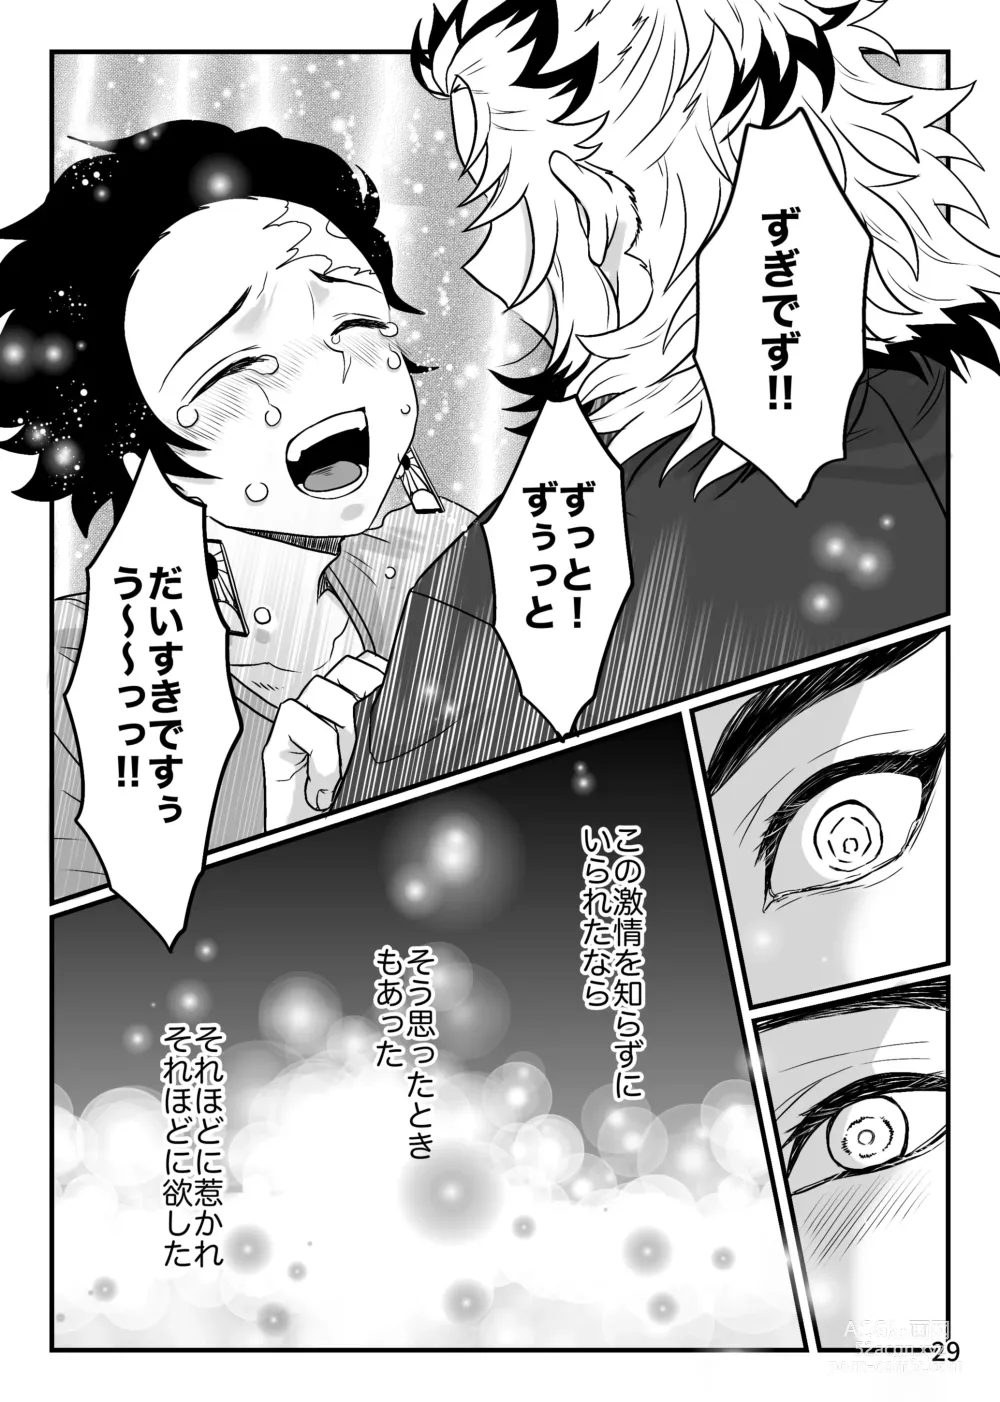 Page 29 of doujinshi Kono Gekijou o Shirazu ni